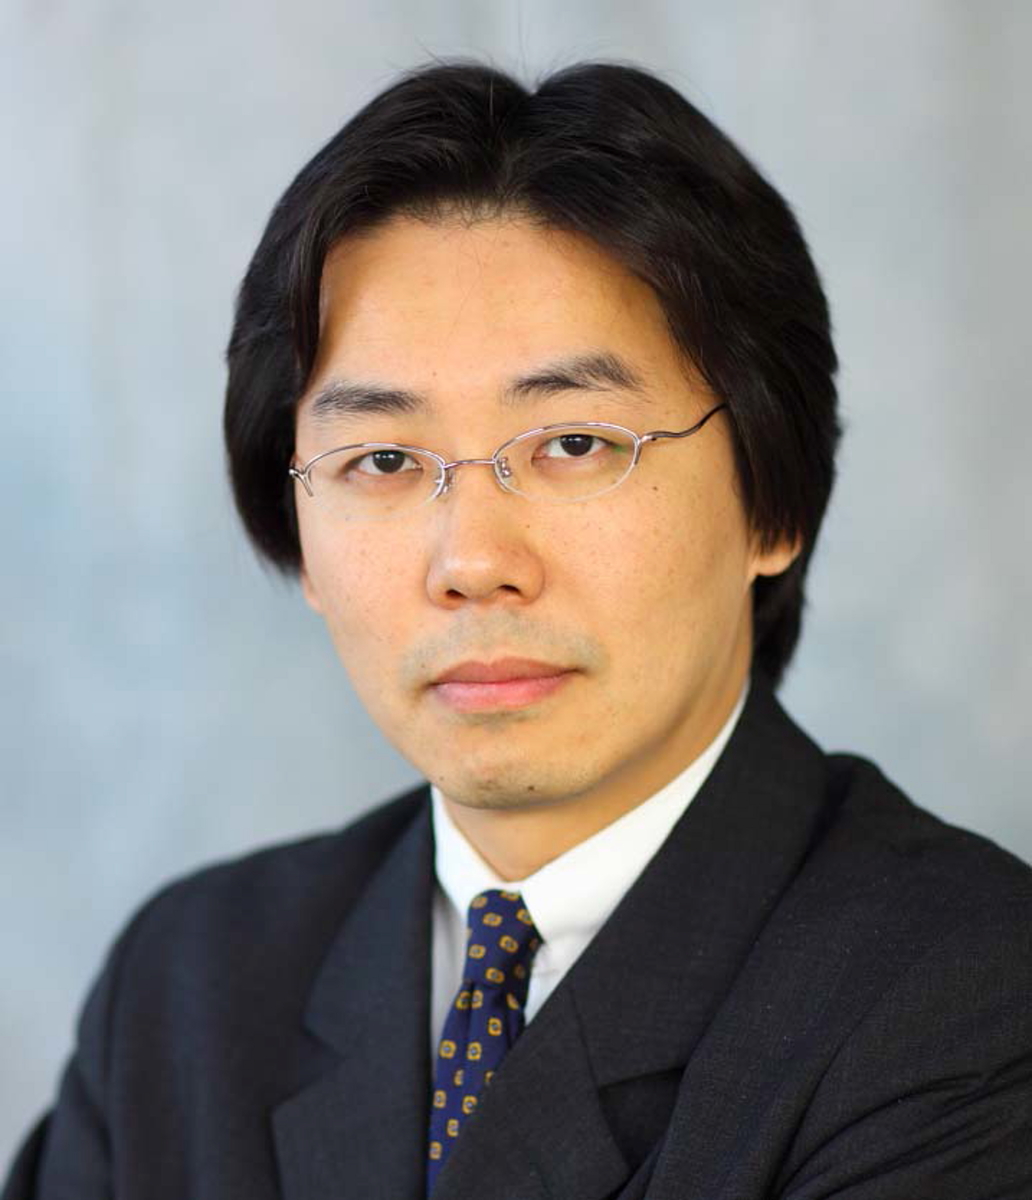 石井優教授が第38回 大阪科学賞を受賞 大阪大学 大学院 生命機能研究科